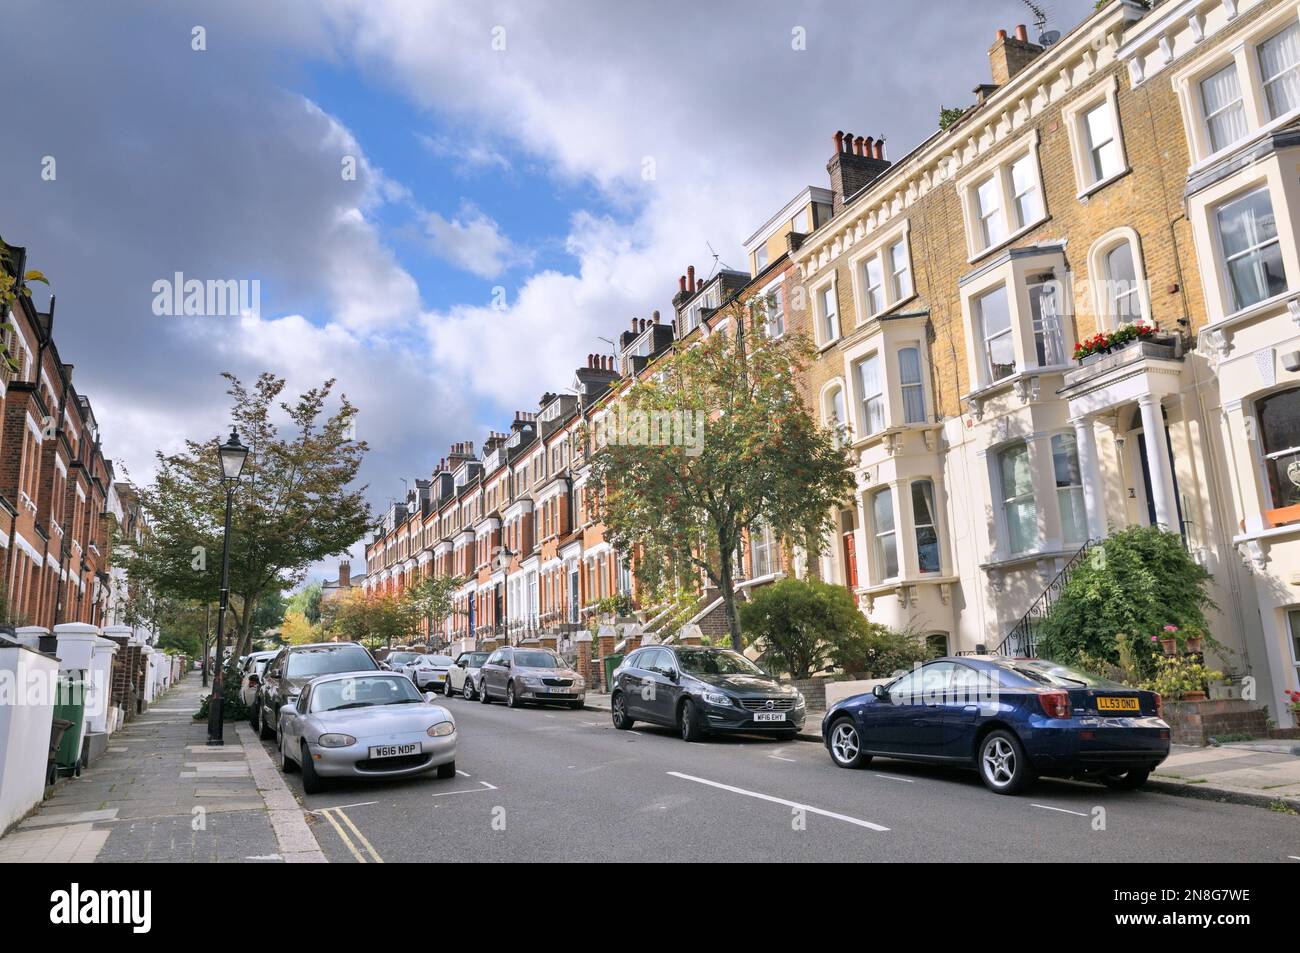 Des maisons en terrasse victorienne bordent une rue résidentielle avec des arbres de rowan dans le quartier riche et verdoyant de Hampstead Village, au nord de Londres, en Angleterre Banque D'Images